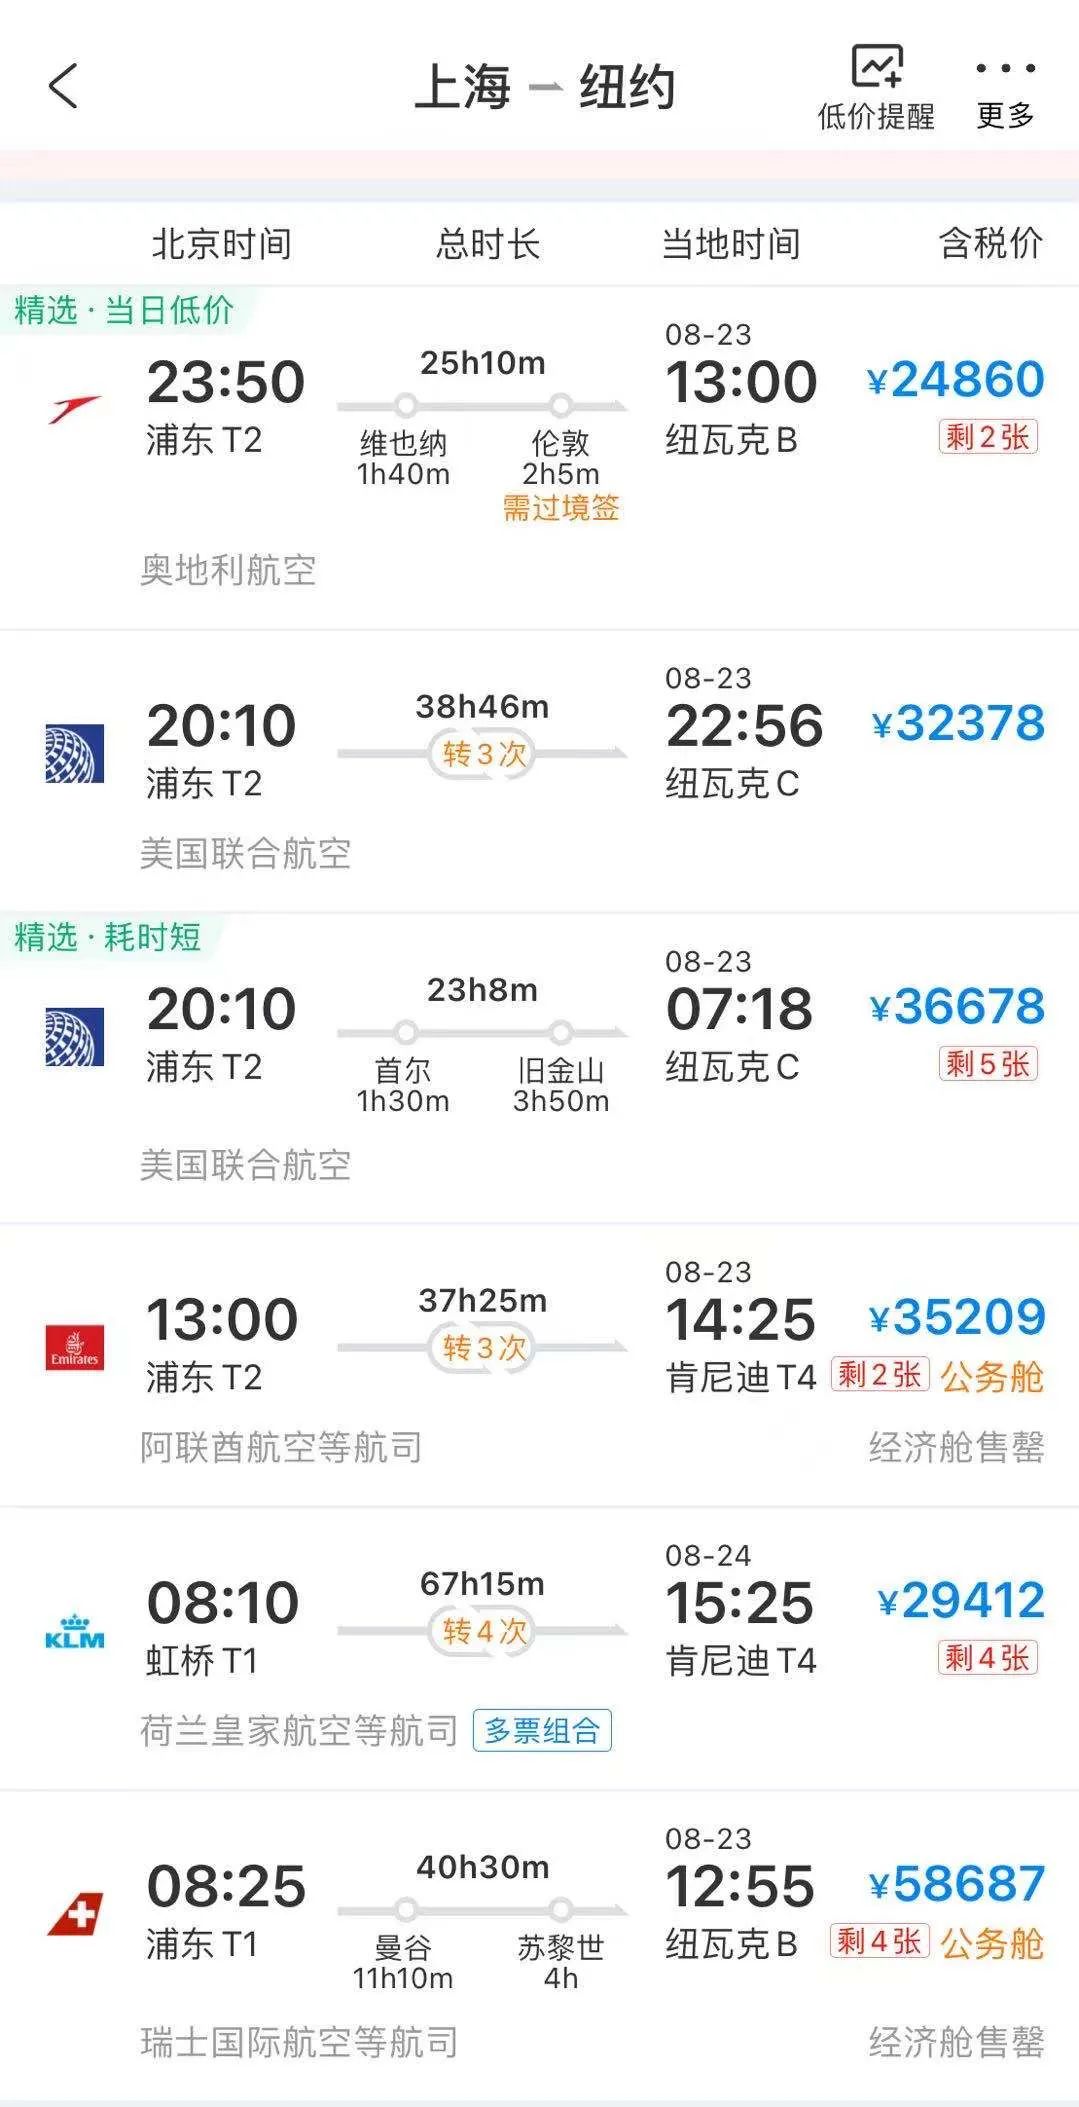 票务平台“携程网”8月22日上海飞往纽约的机票存量及价格